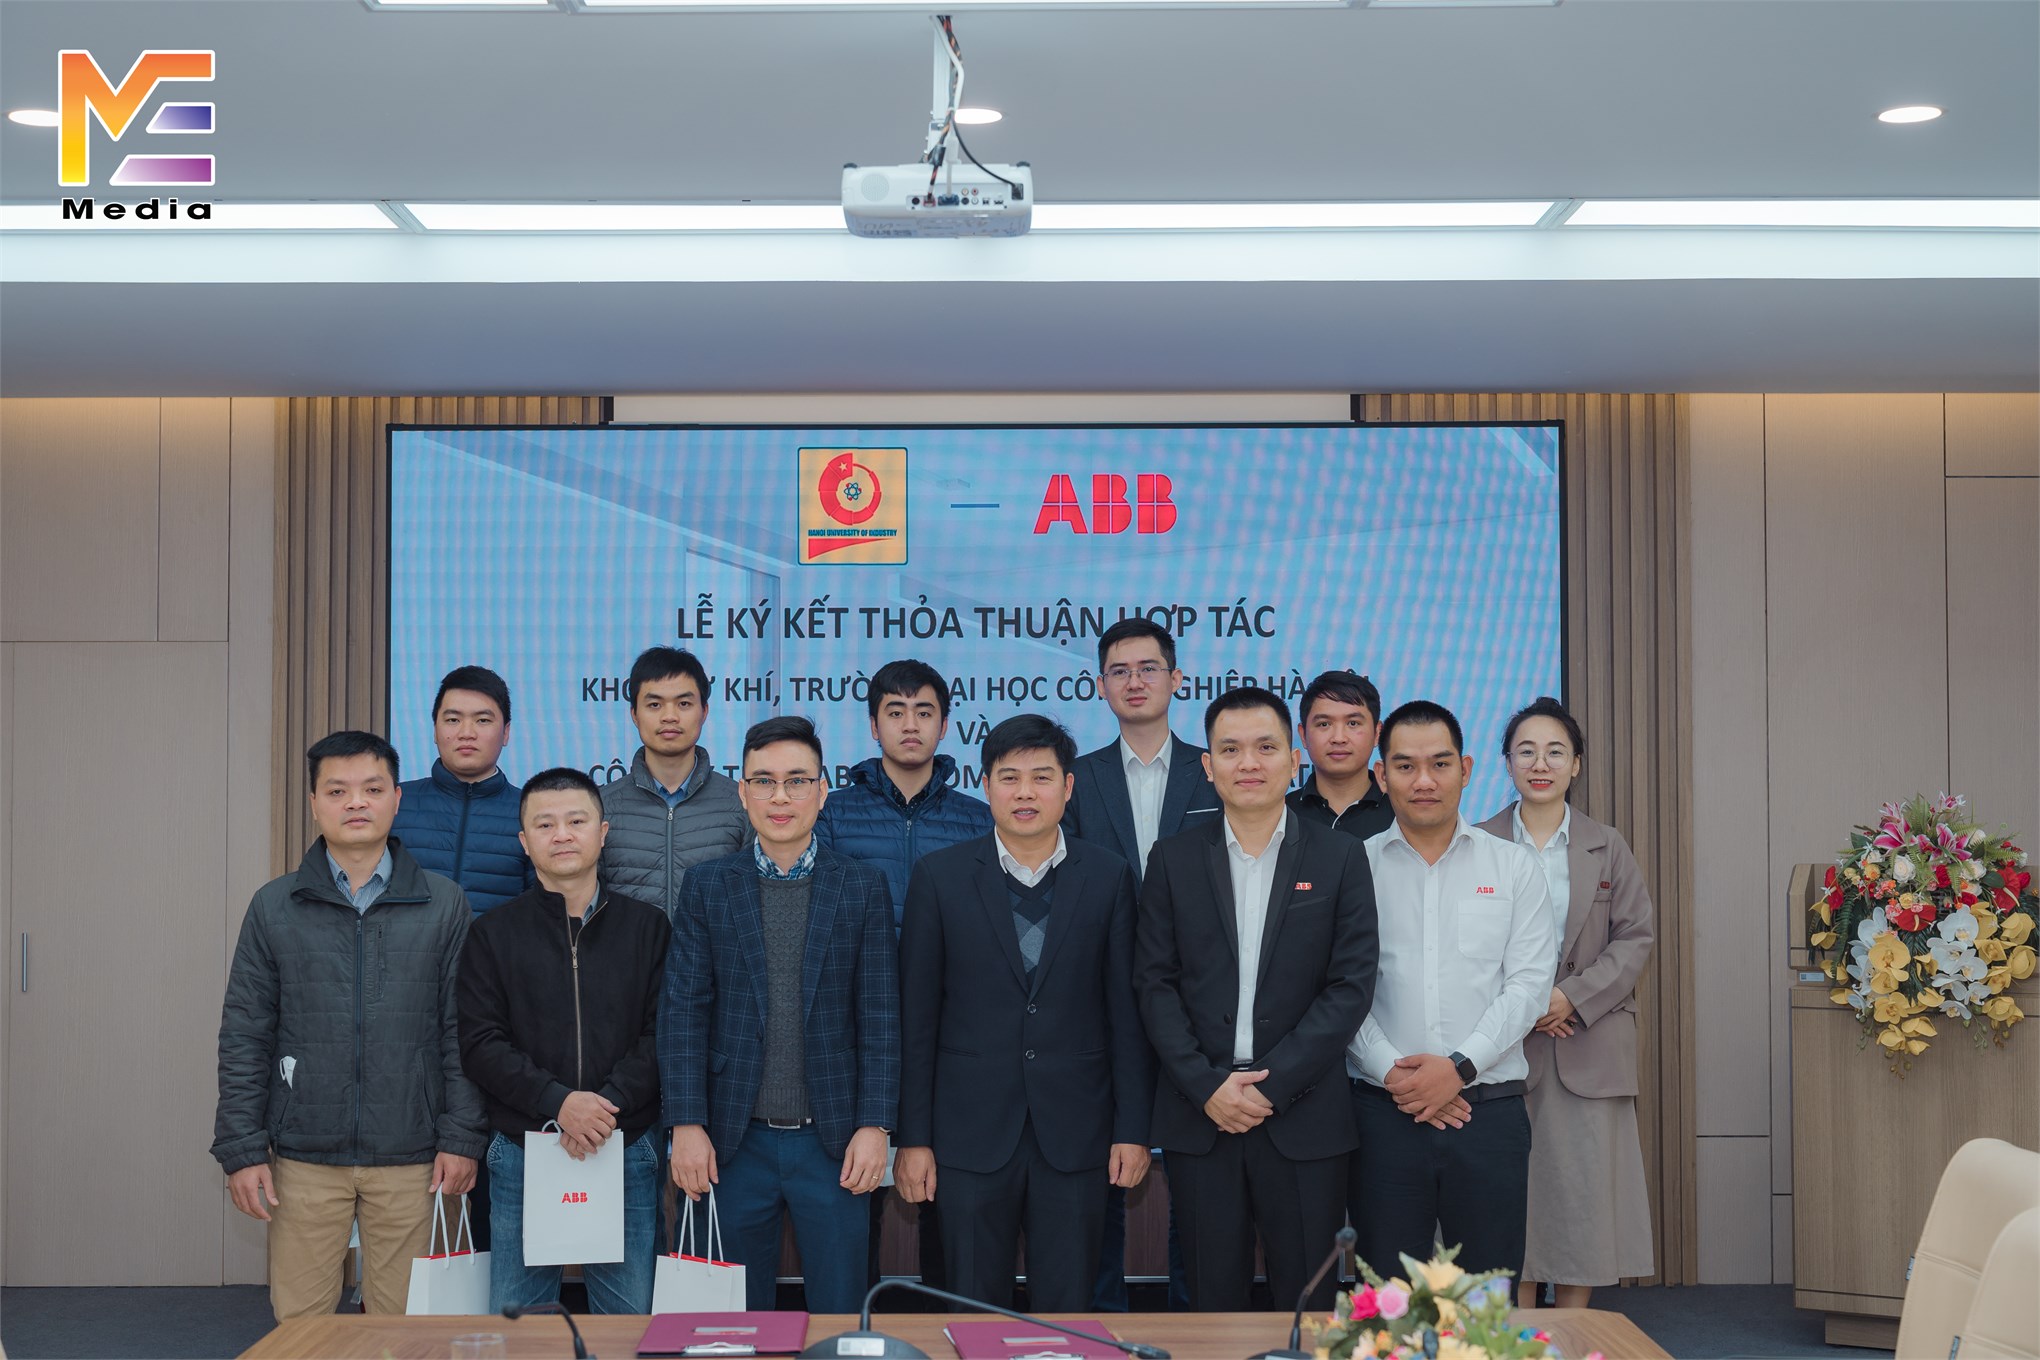 Ký thỏa thuận hợp tác về nghiên cứu và chuyển giao công nghệ của Khoa Cơ khí với công ty TNHH ABB Automation & Electrification